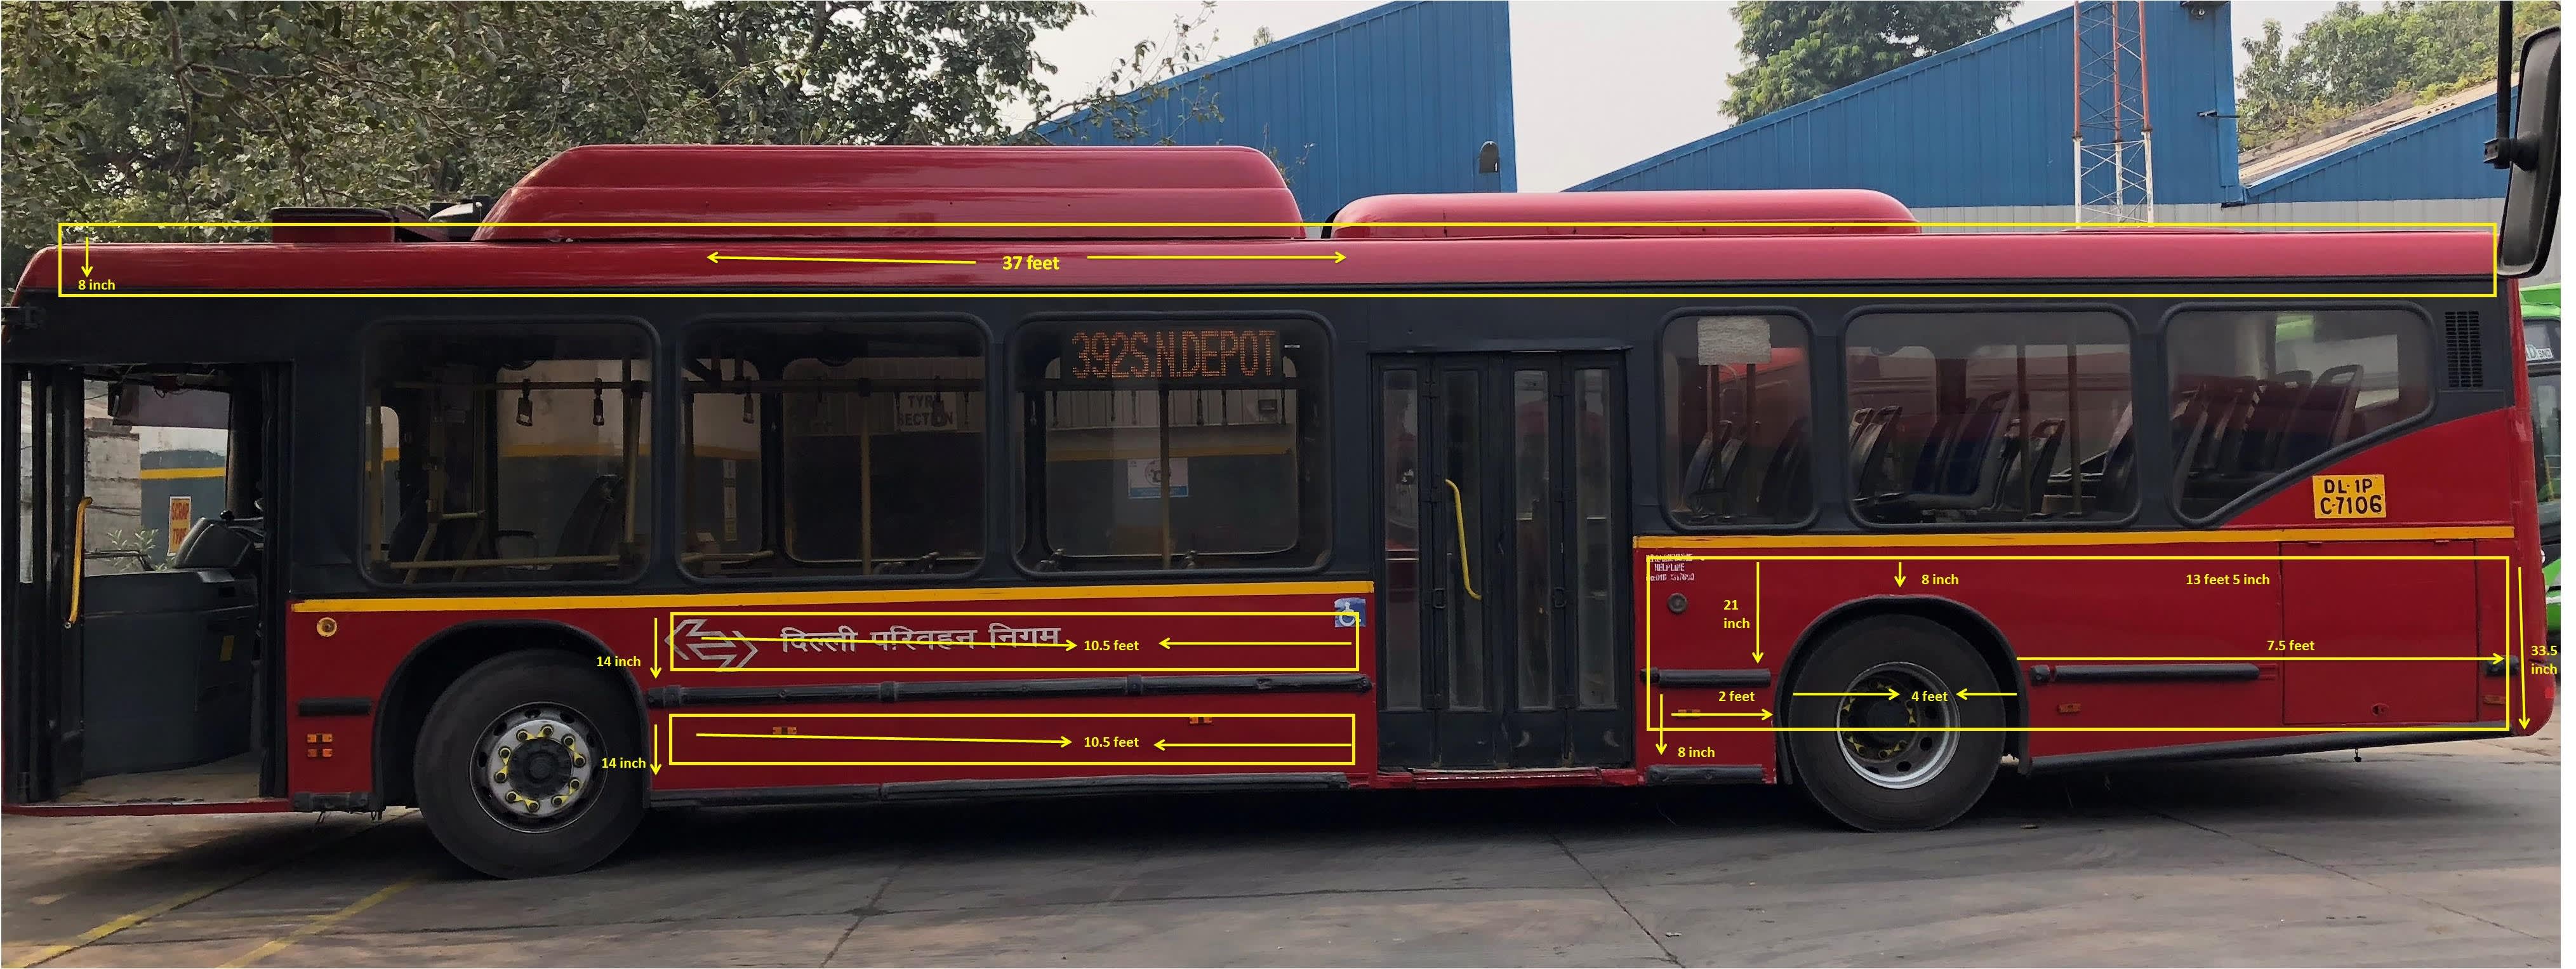 AC Bus - Delhi - Full Bus - Exterior Advertising Option - 5 - DTC Bus